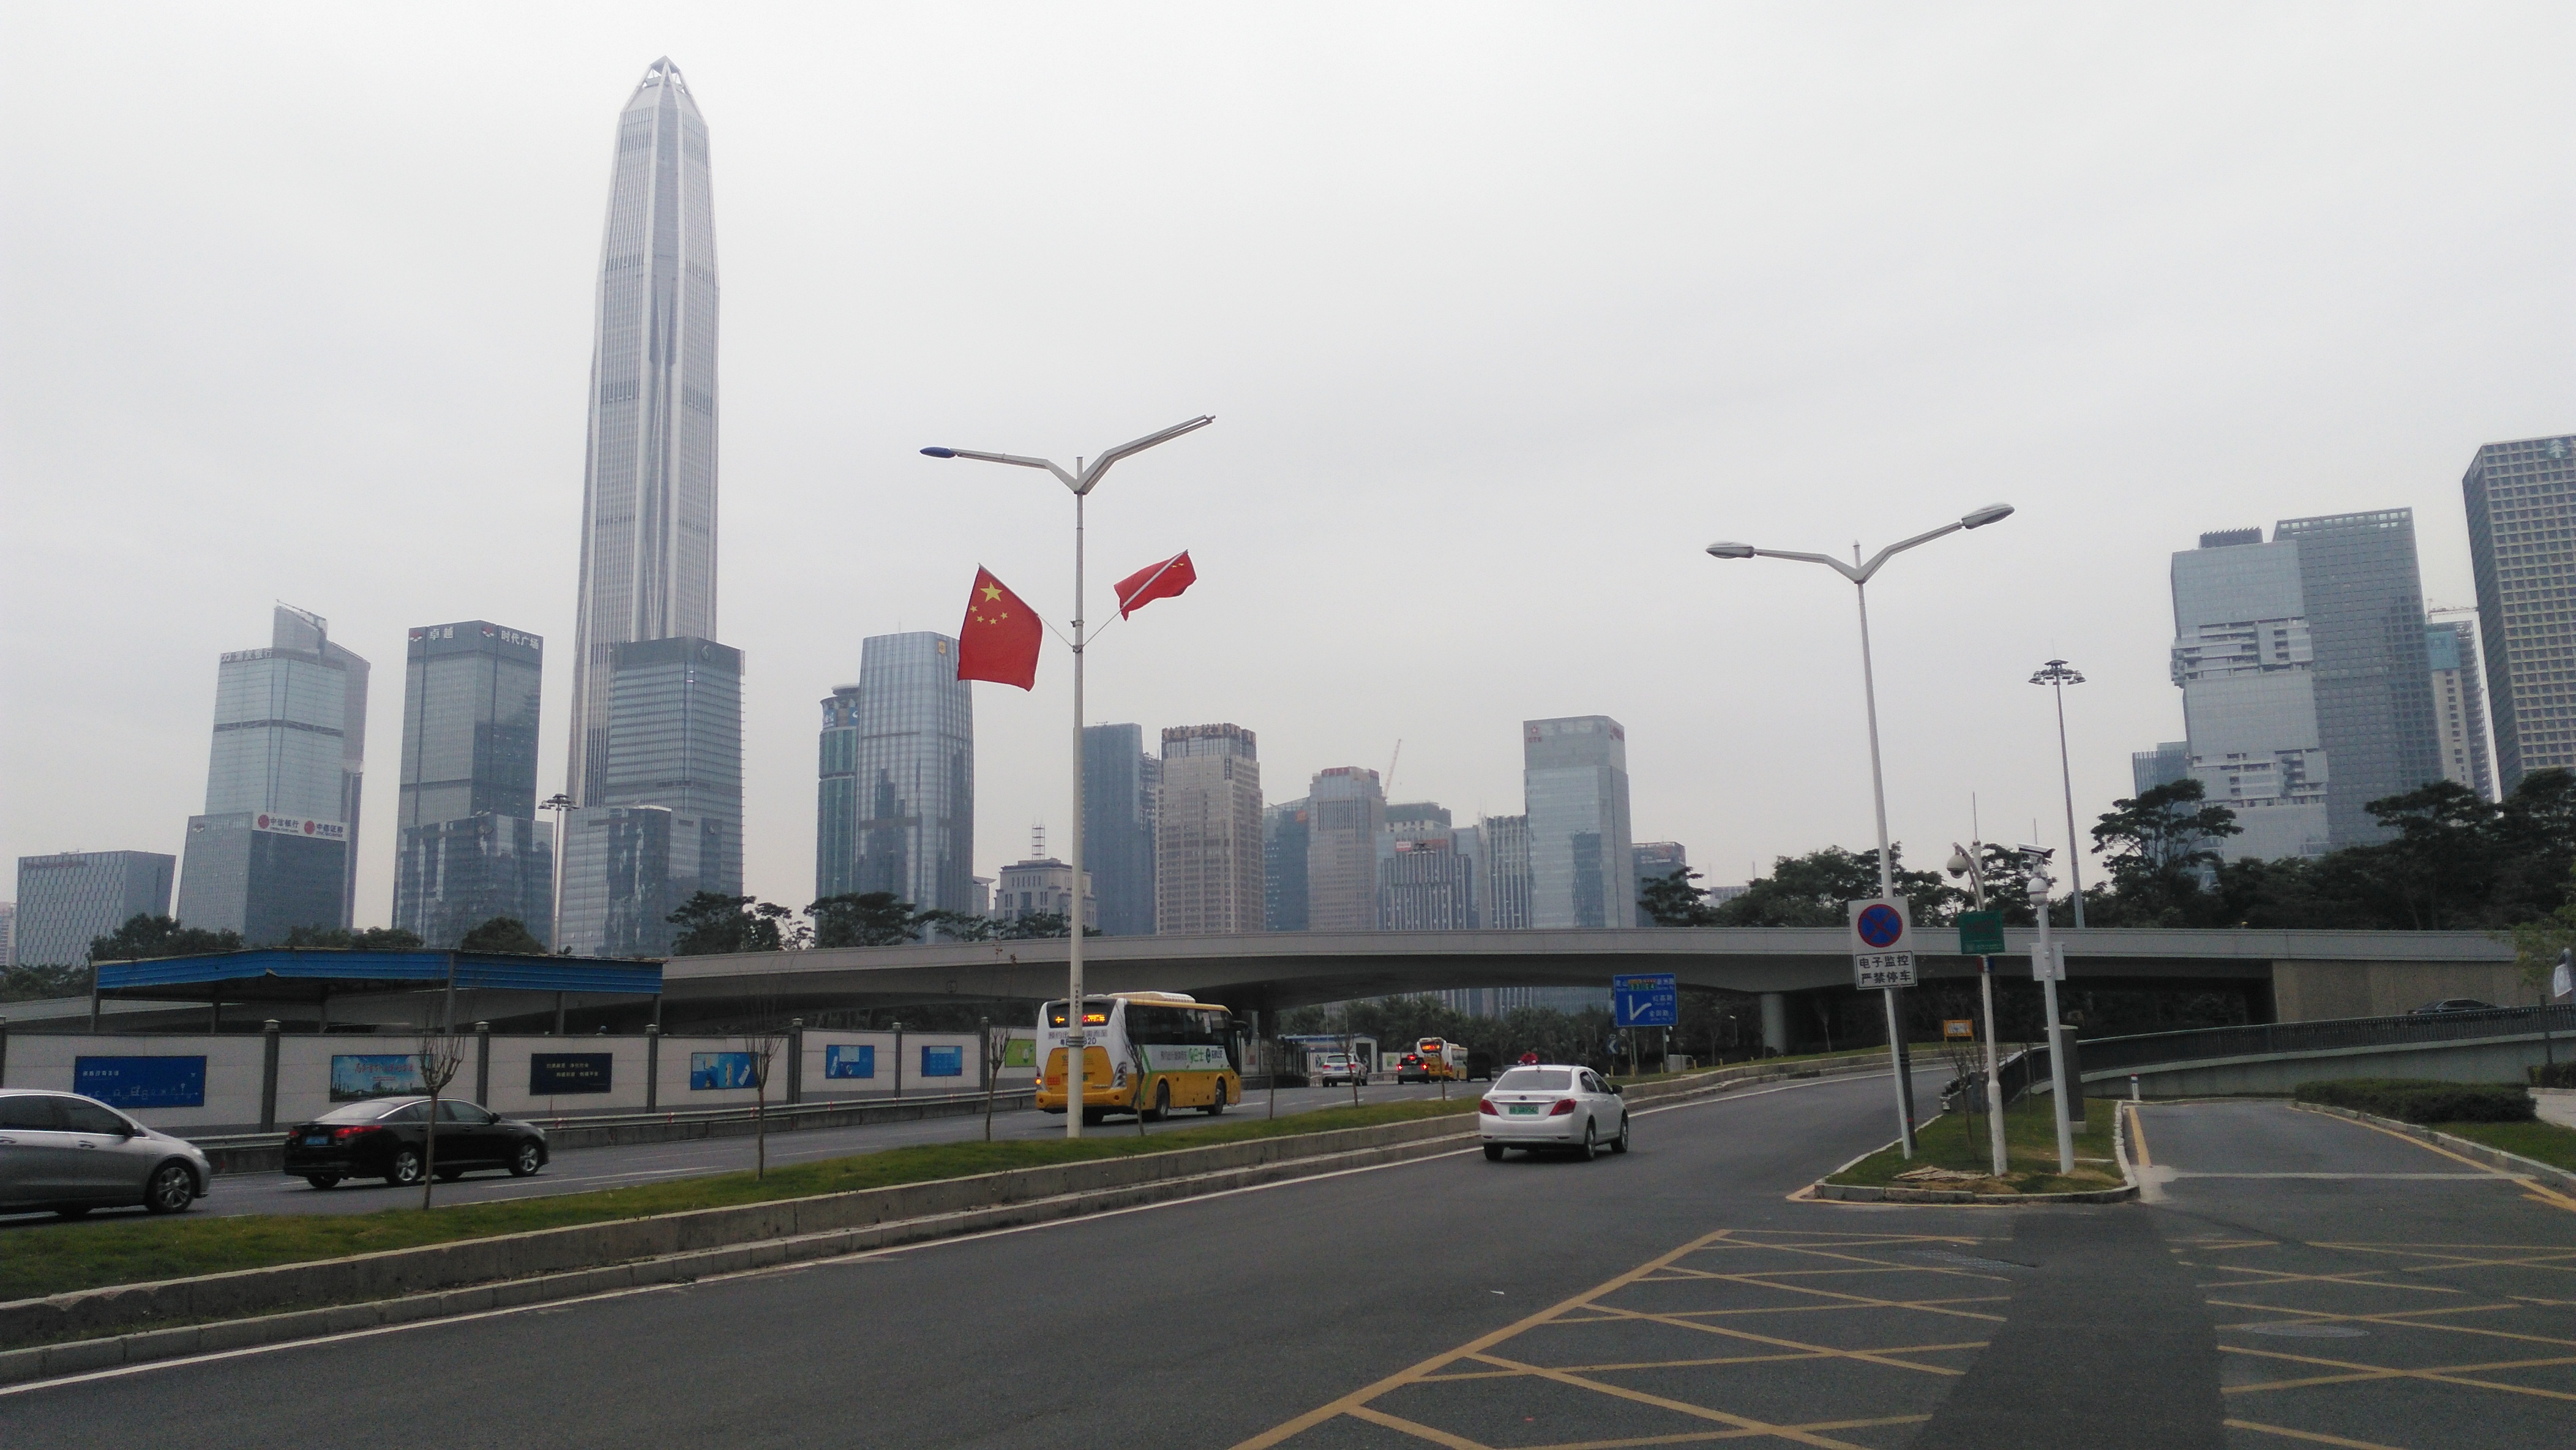 眼前的深南大道,是深圳市区里一条重要的东西走向道路